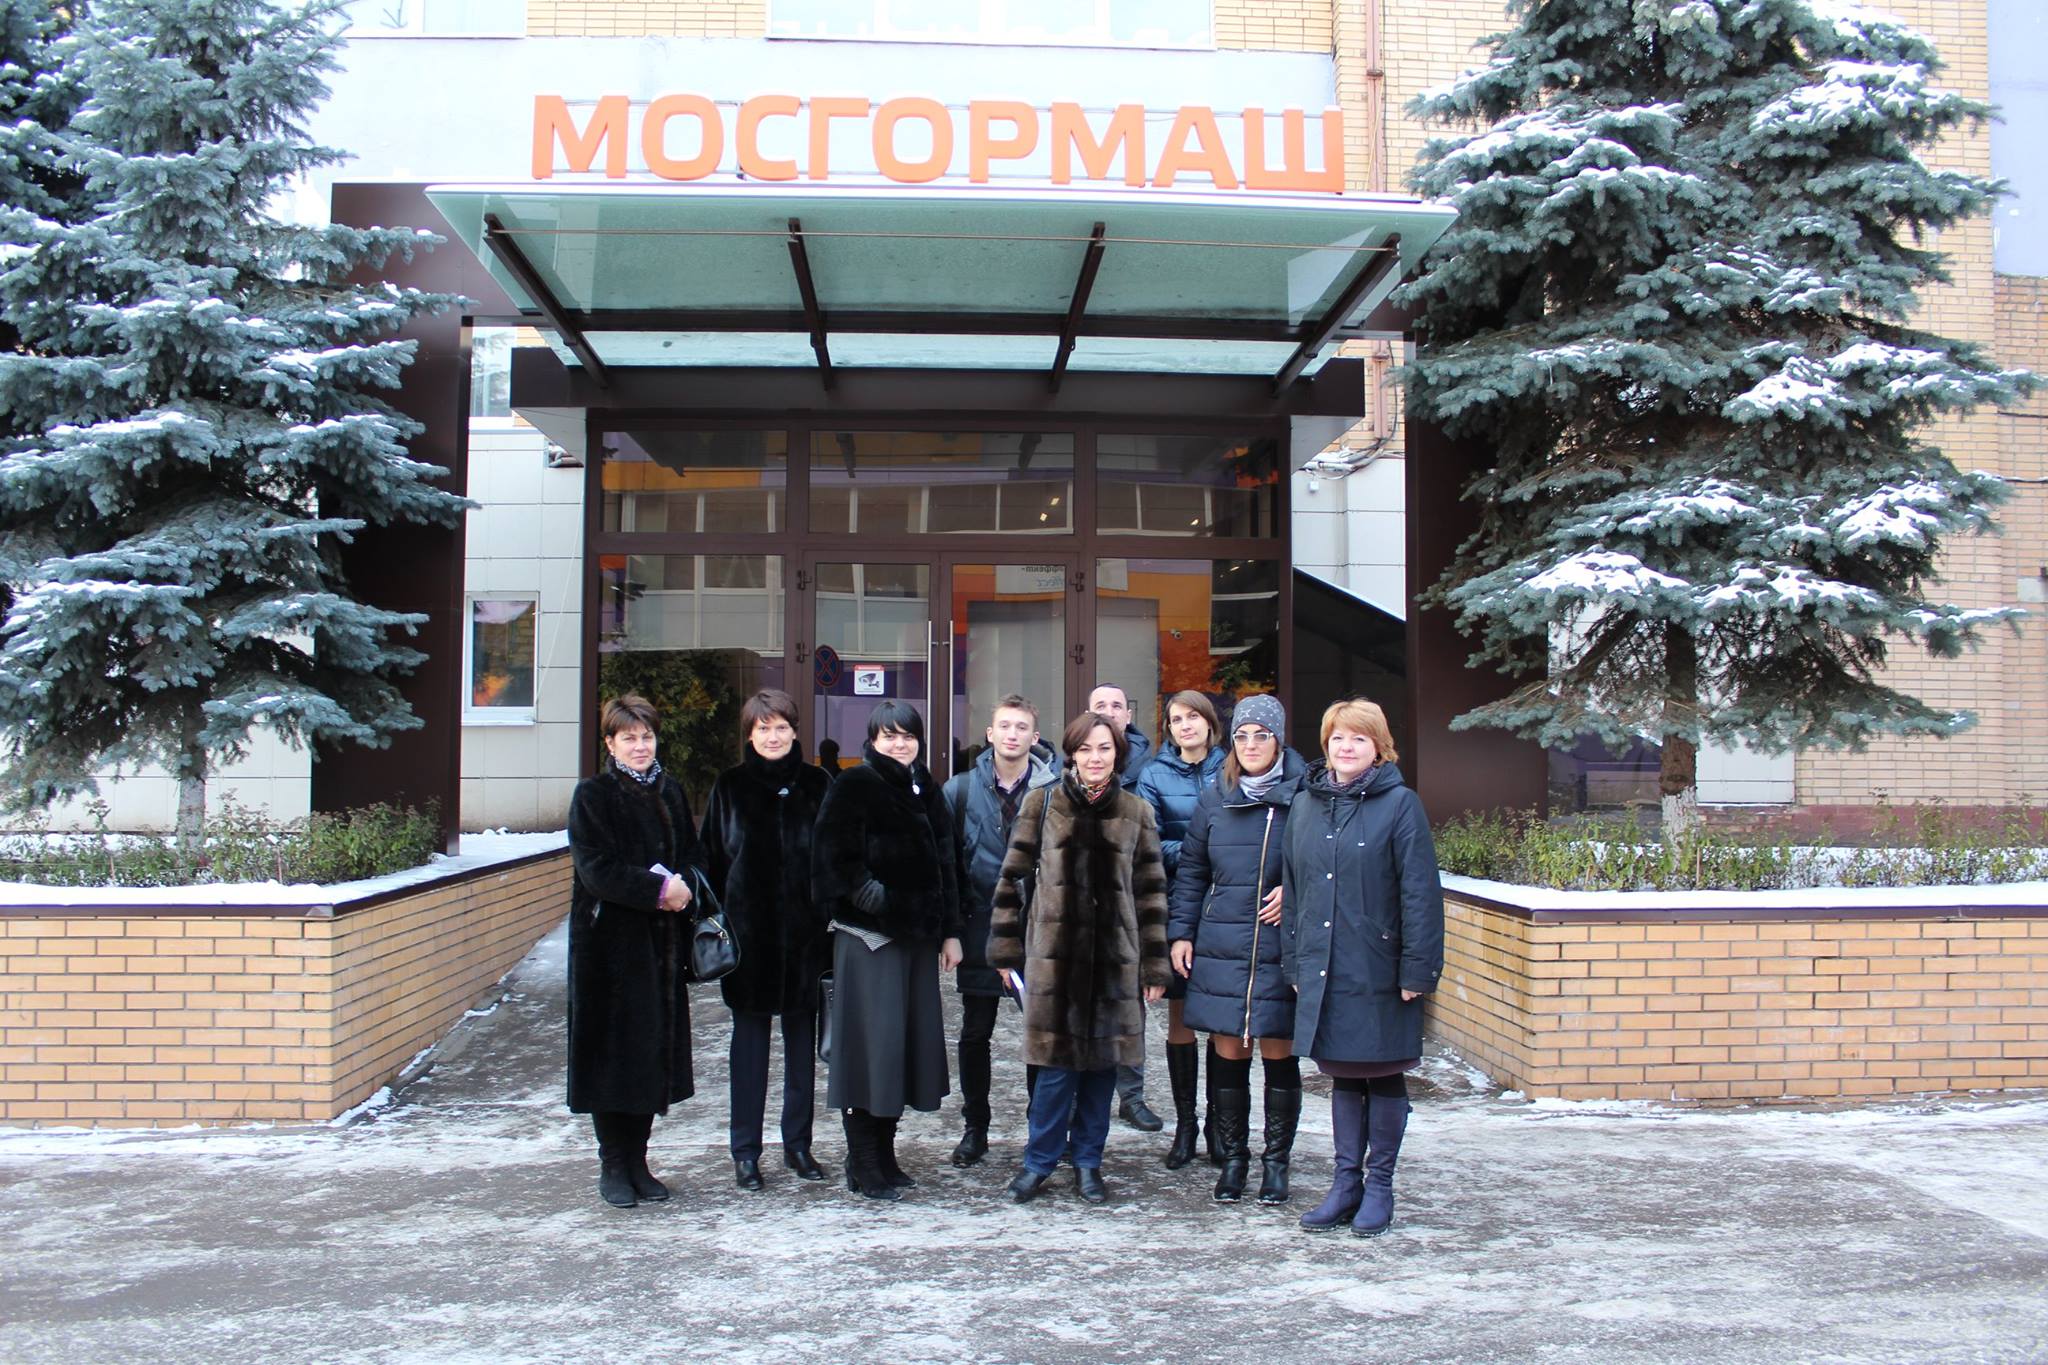 «День без турникетов» в технопарке Мосгормаш